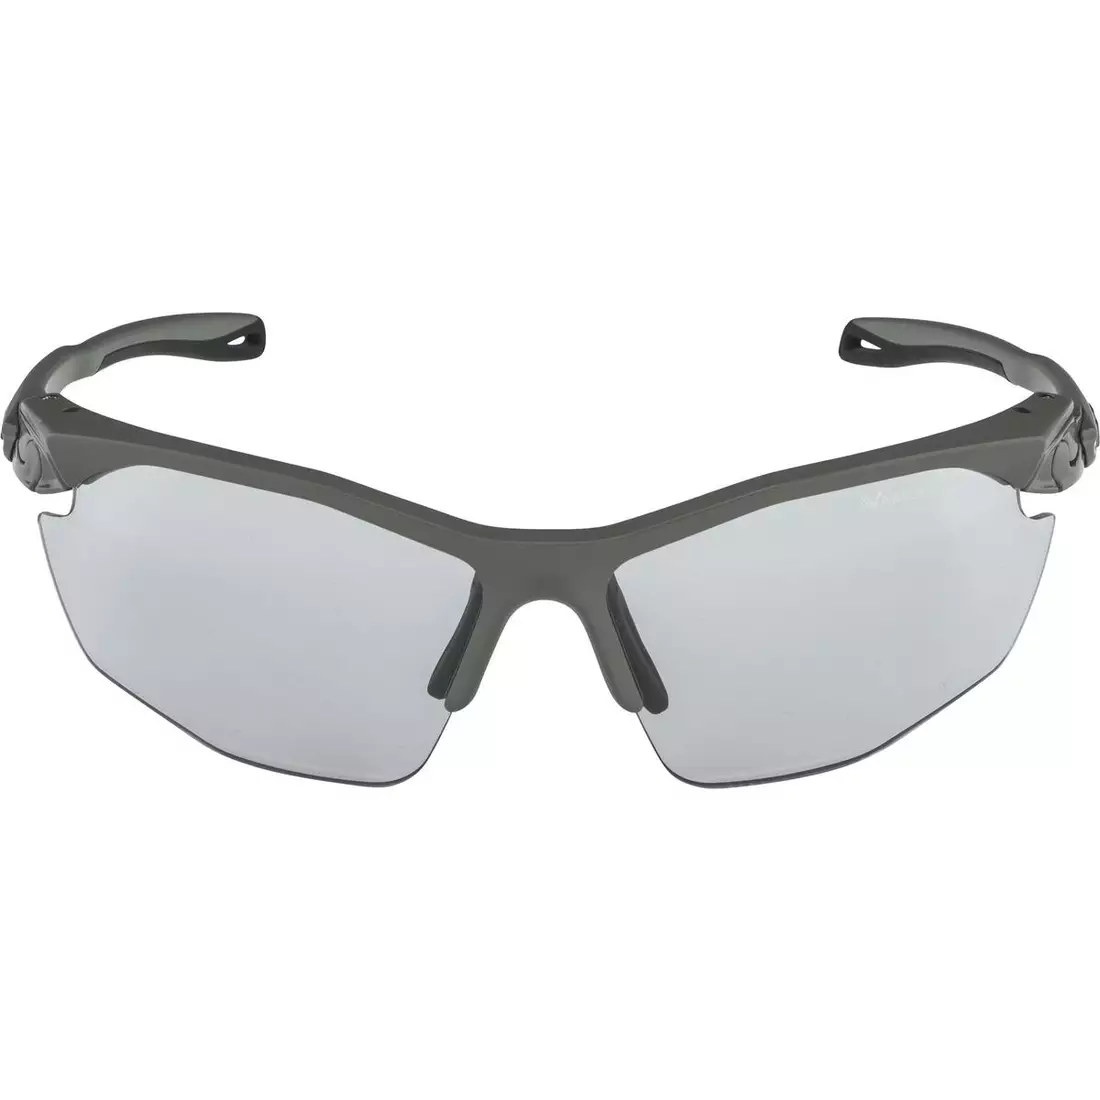 ALPINA TWIST FIVE HR V Photochromic sports glasses MOON-GREY MATT MIRROR BLACK 